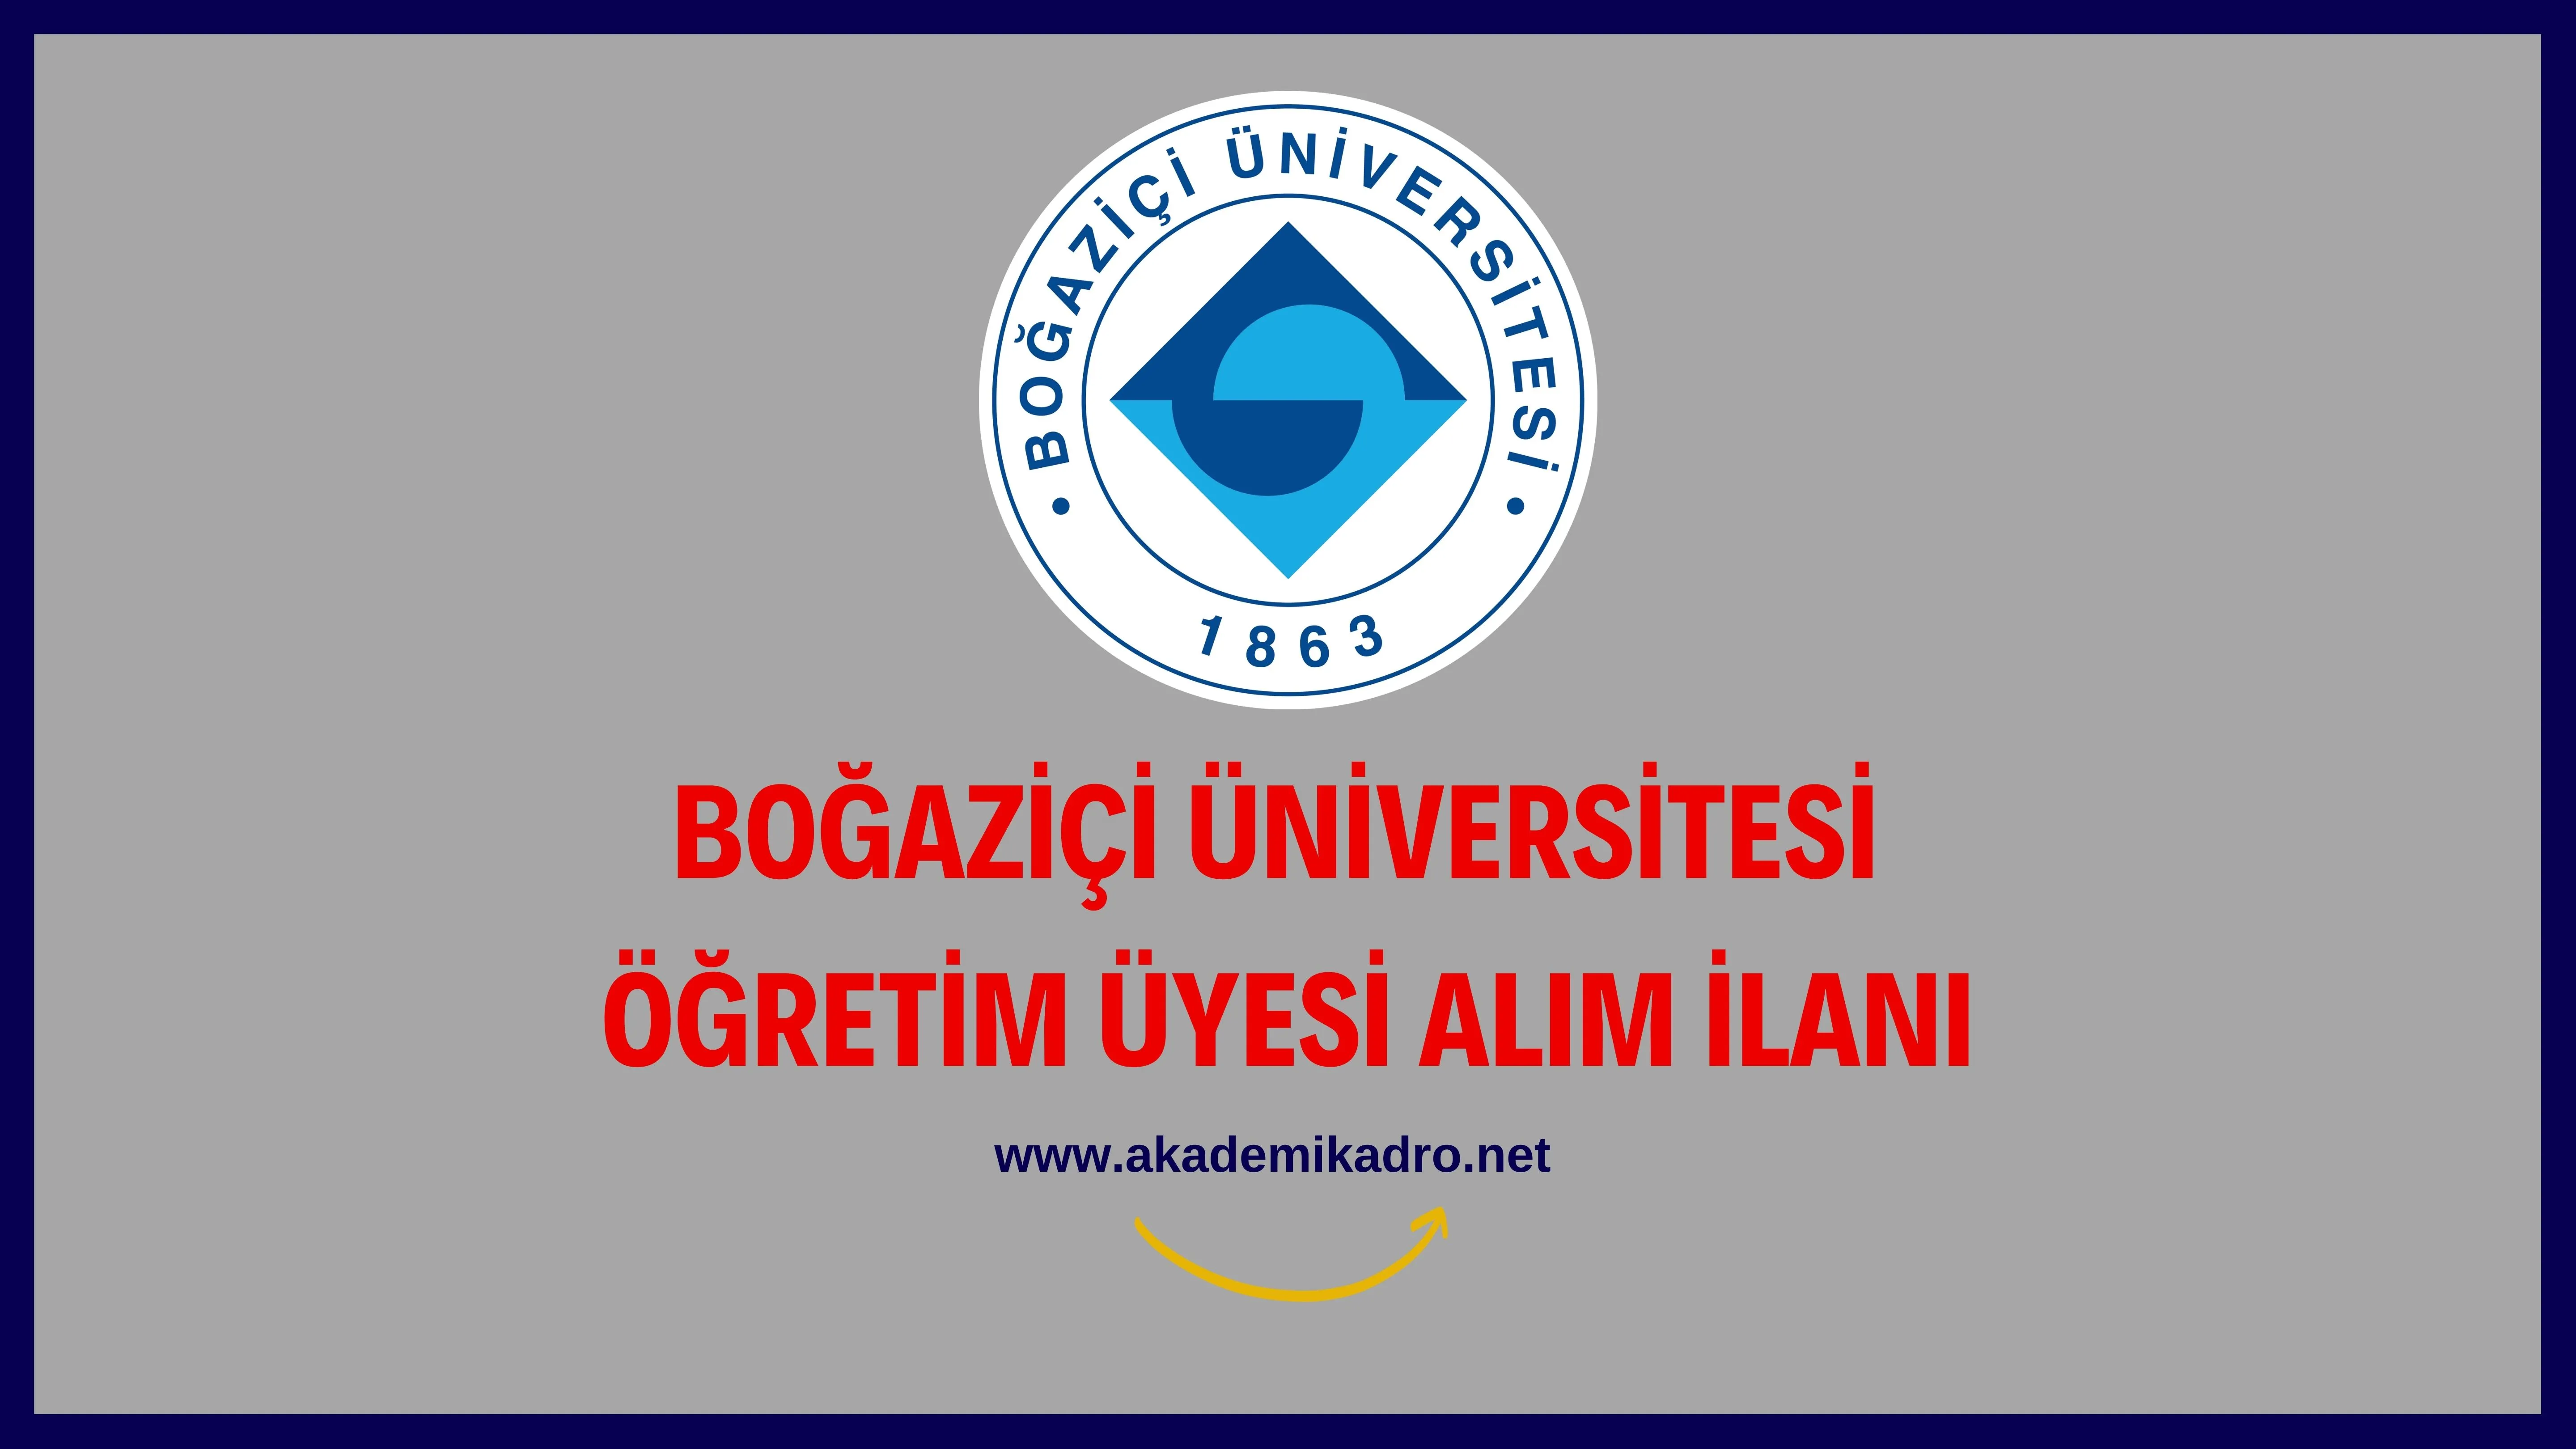 Boğaziçi Üniversitesi 2 Öğretim üyesi alacak.